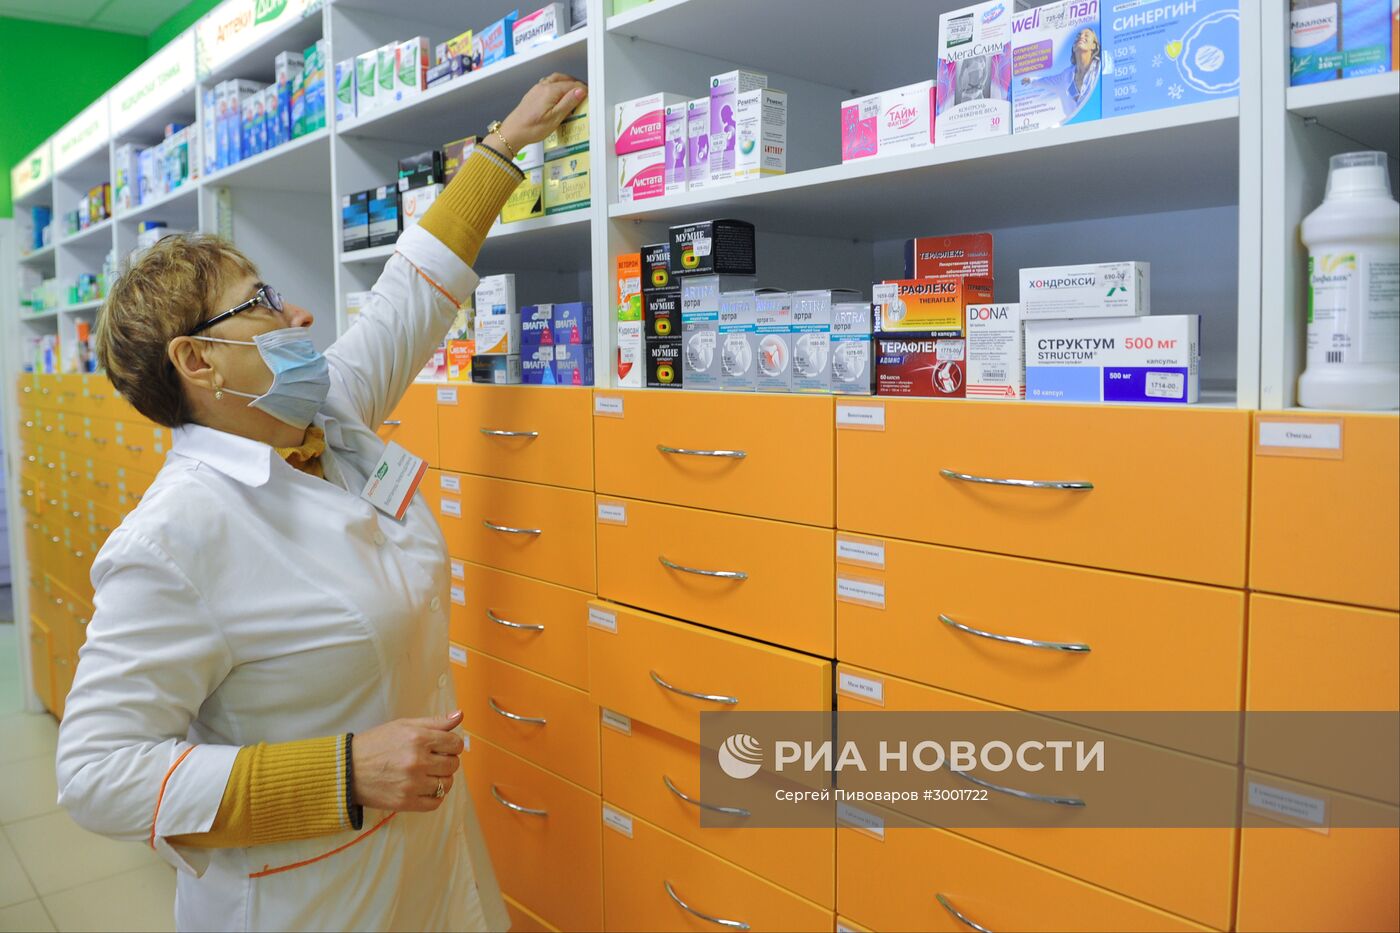 Продажа лекарственных препаратов в одной из аптек в Ростове-на-Дону